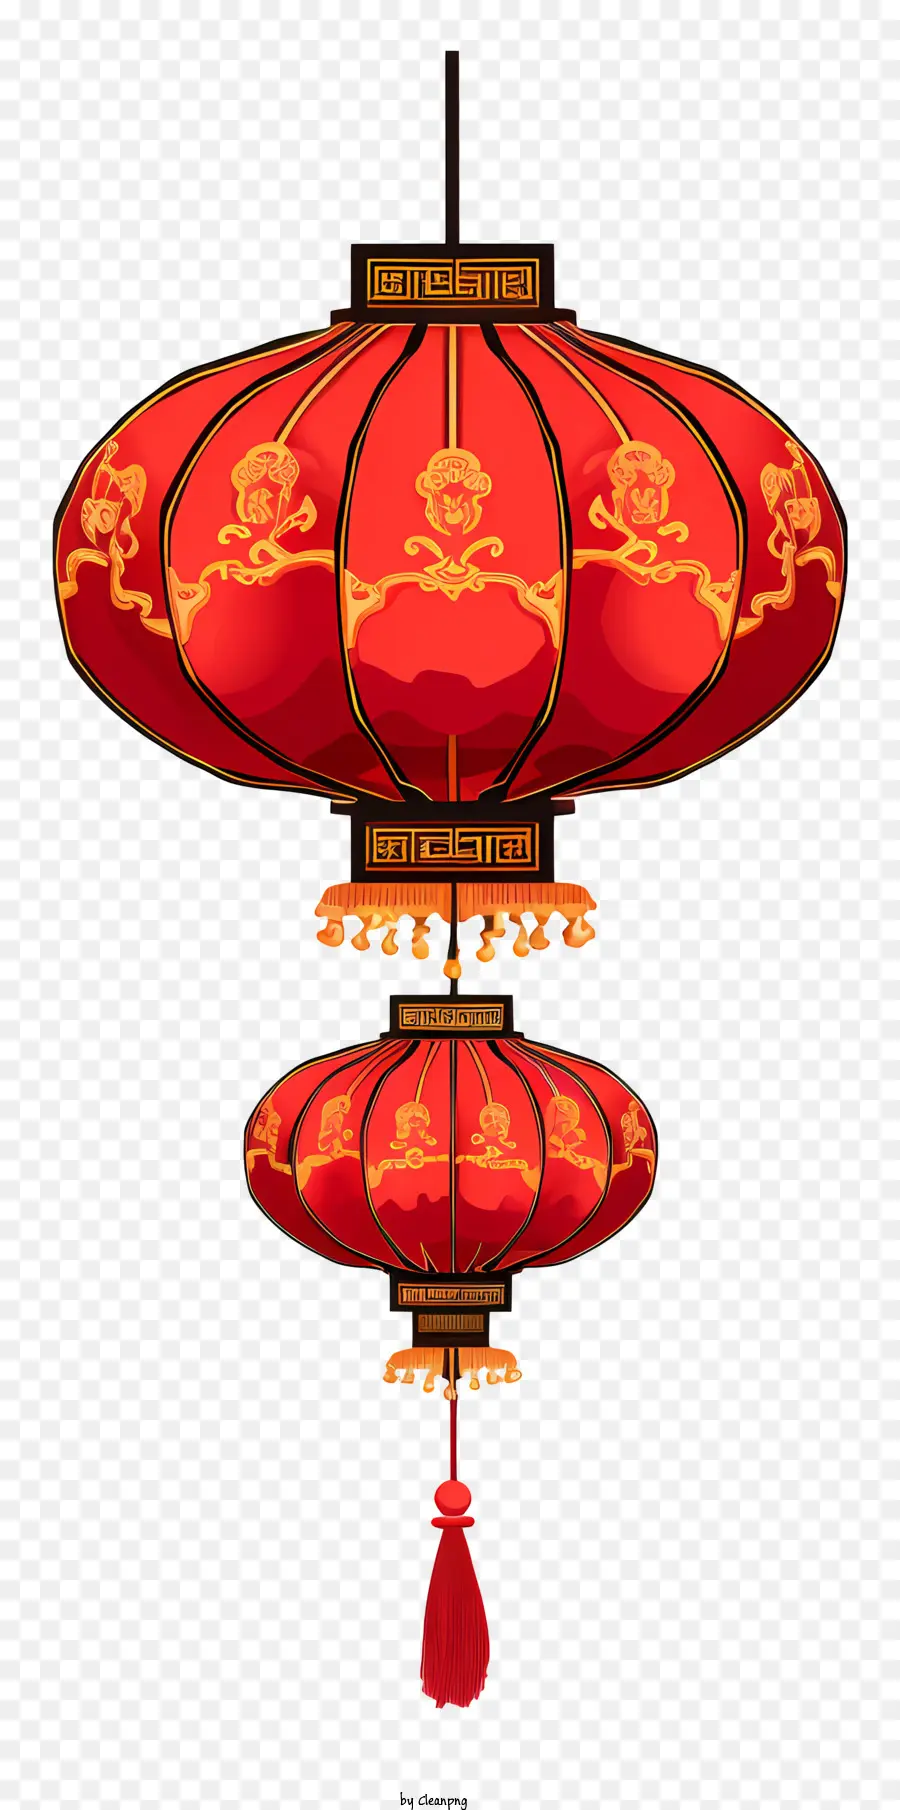 Traditionelle chinesische Laterne -Rot -Laterne -chinesische Festivals Chinesische Feierlichkeiten Chinesische Kultur - Traditionelle chinesische Laterne mit rotem und goldenem Papier